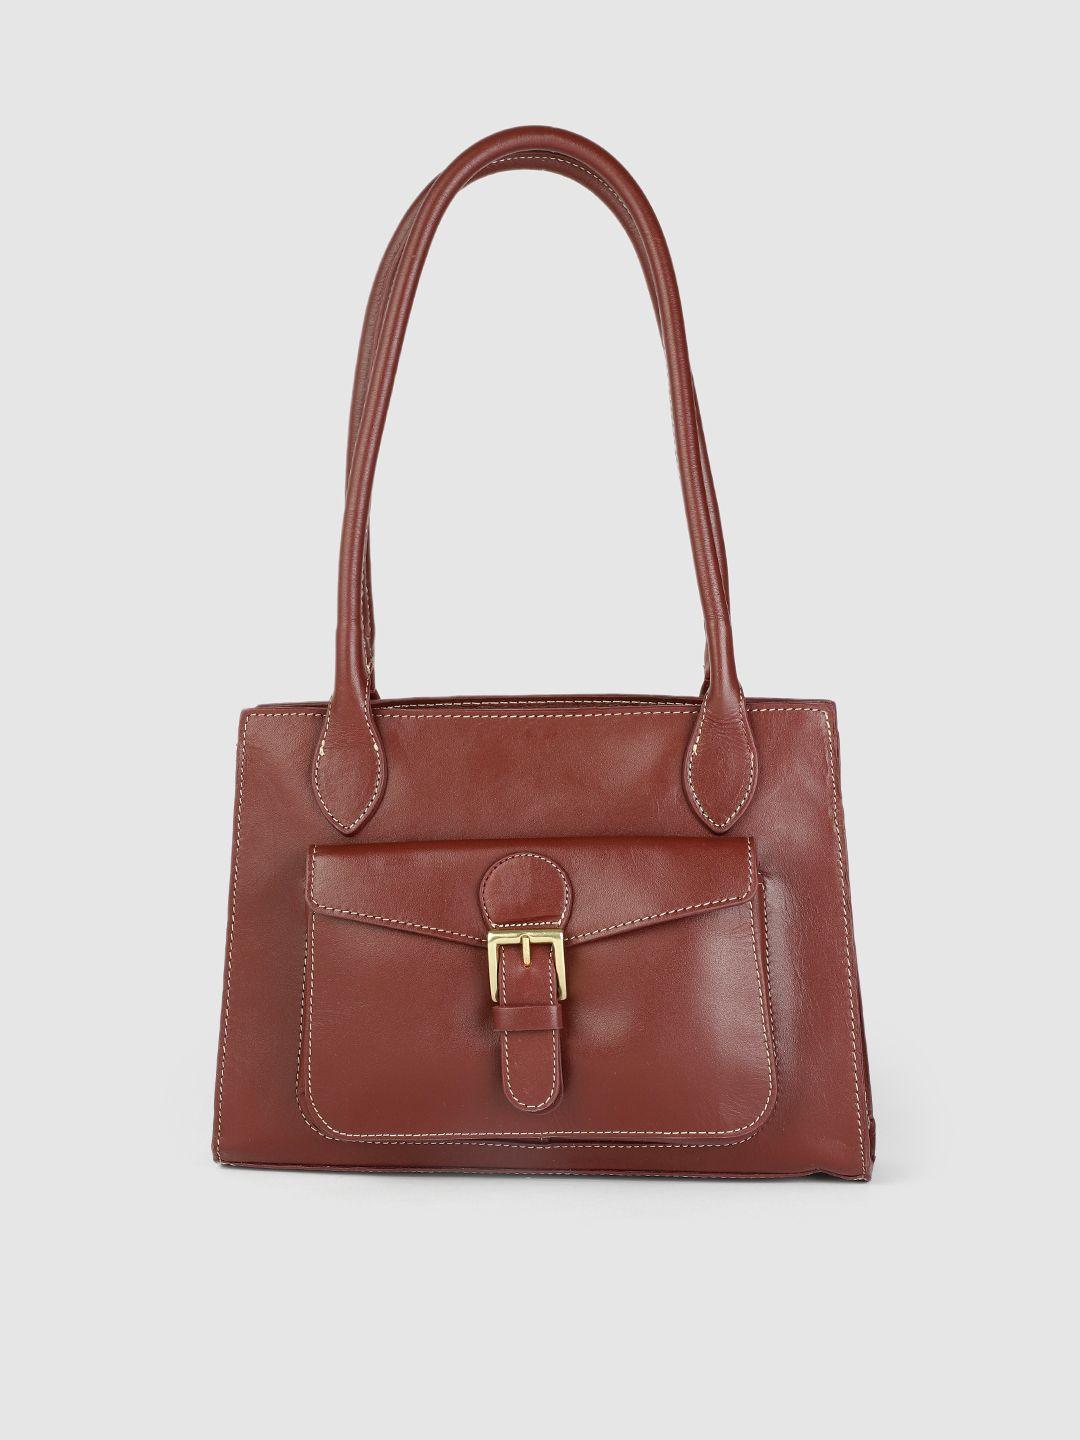 hidesign women maroon leather structured shoulder bag